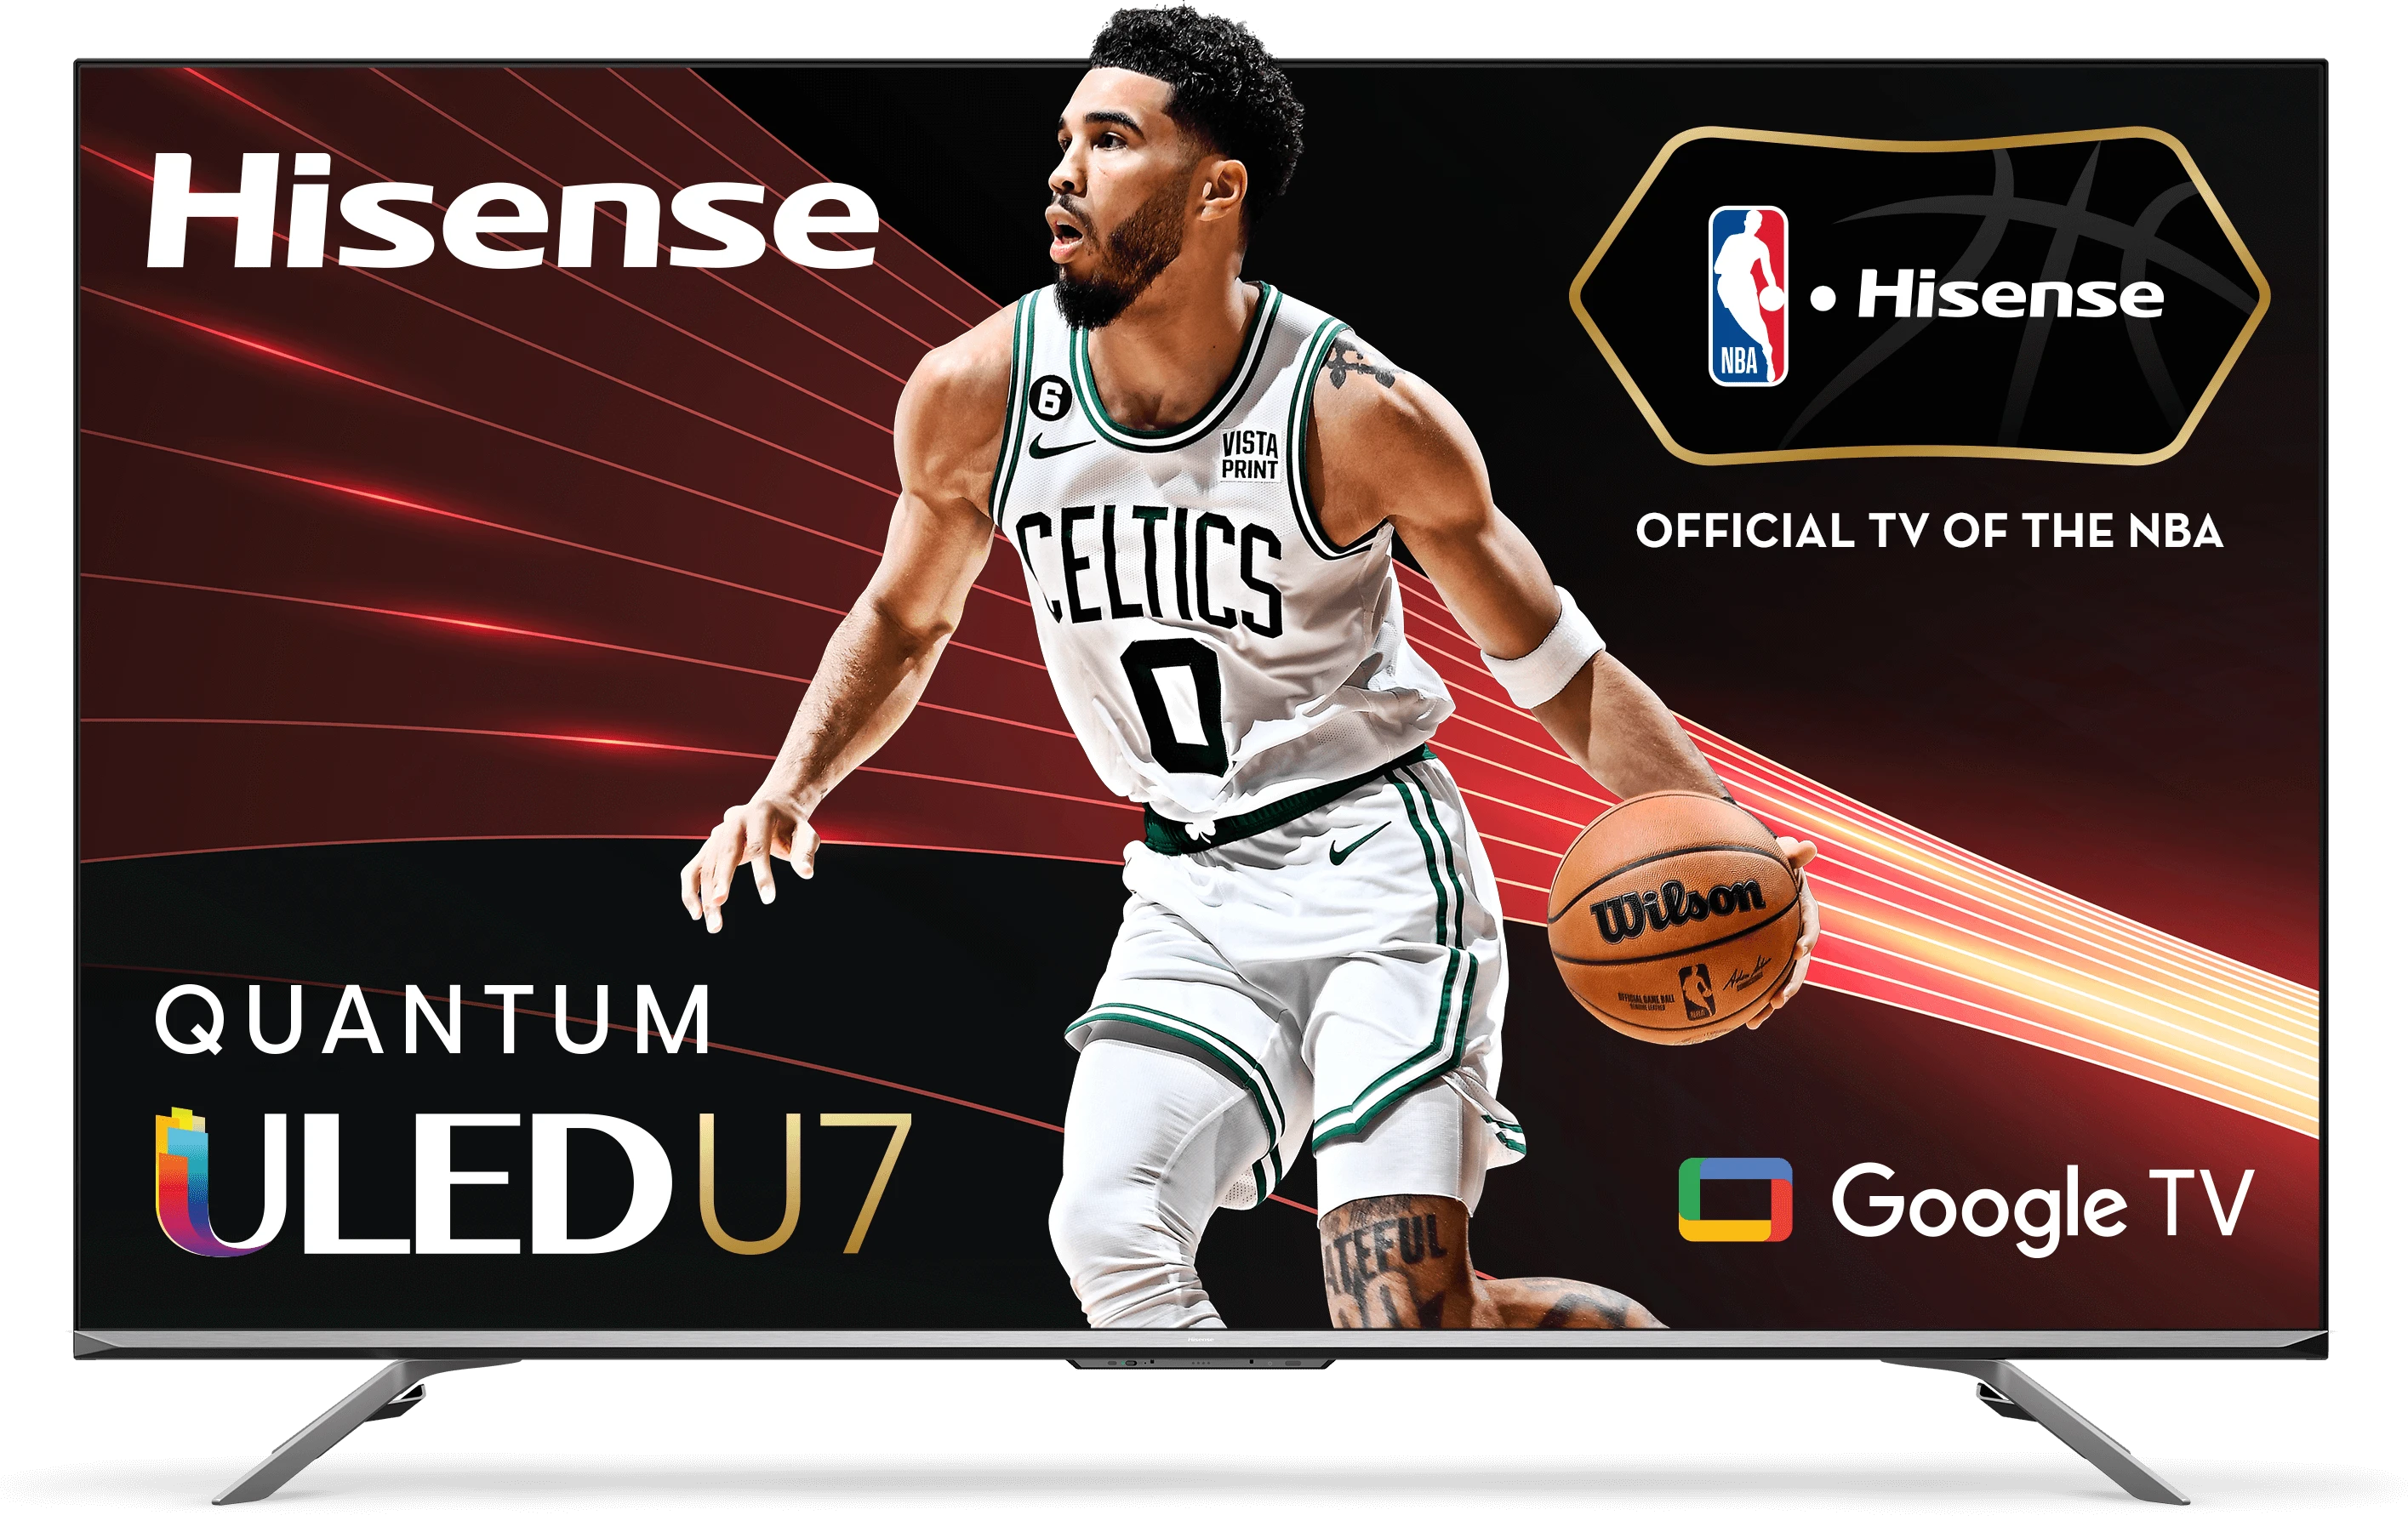 TV Hisense XClass: Televisores 4K HDR baratos con un año de Peacock Premium  gratis